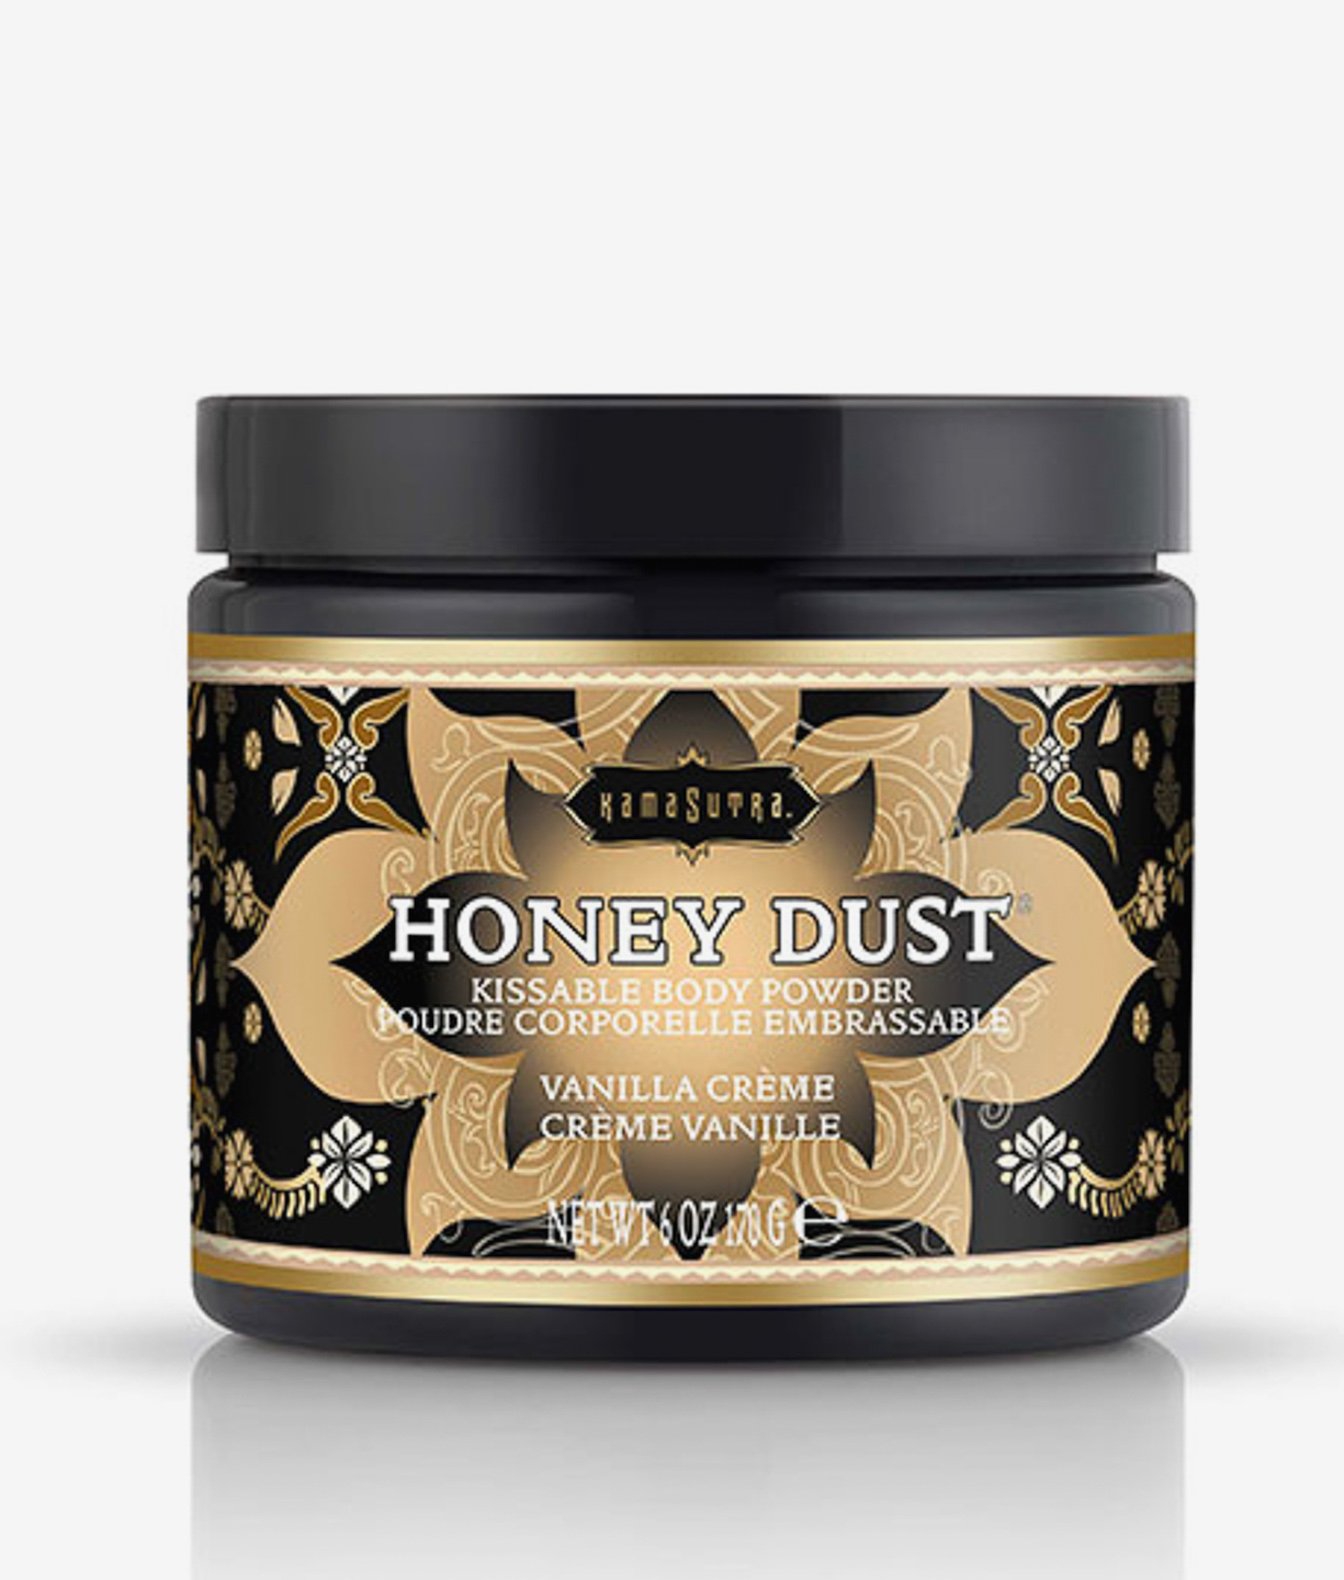 Kama Sutra Honey Dust pyłek do gry wstępnej